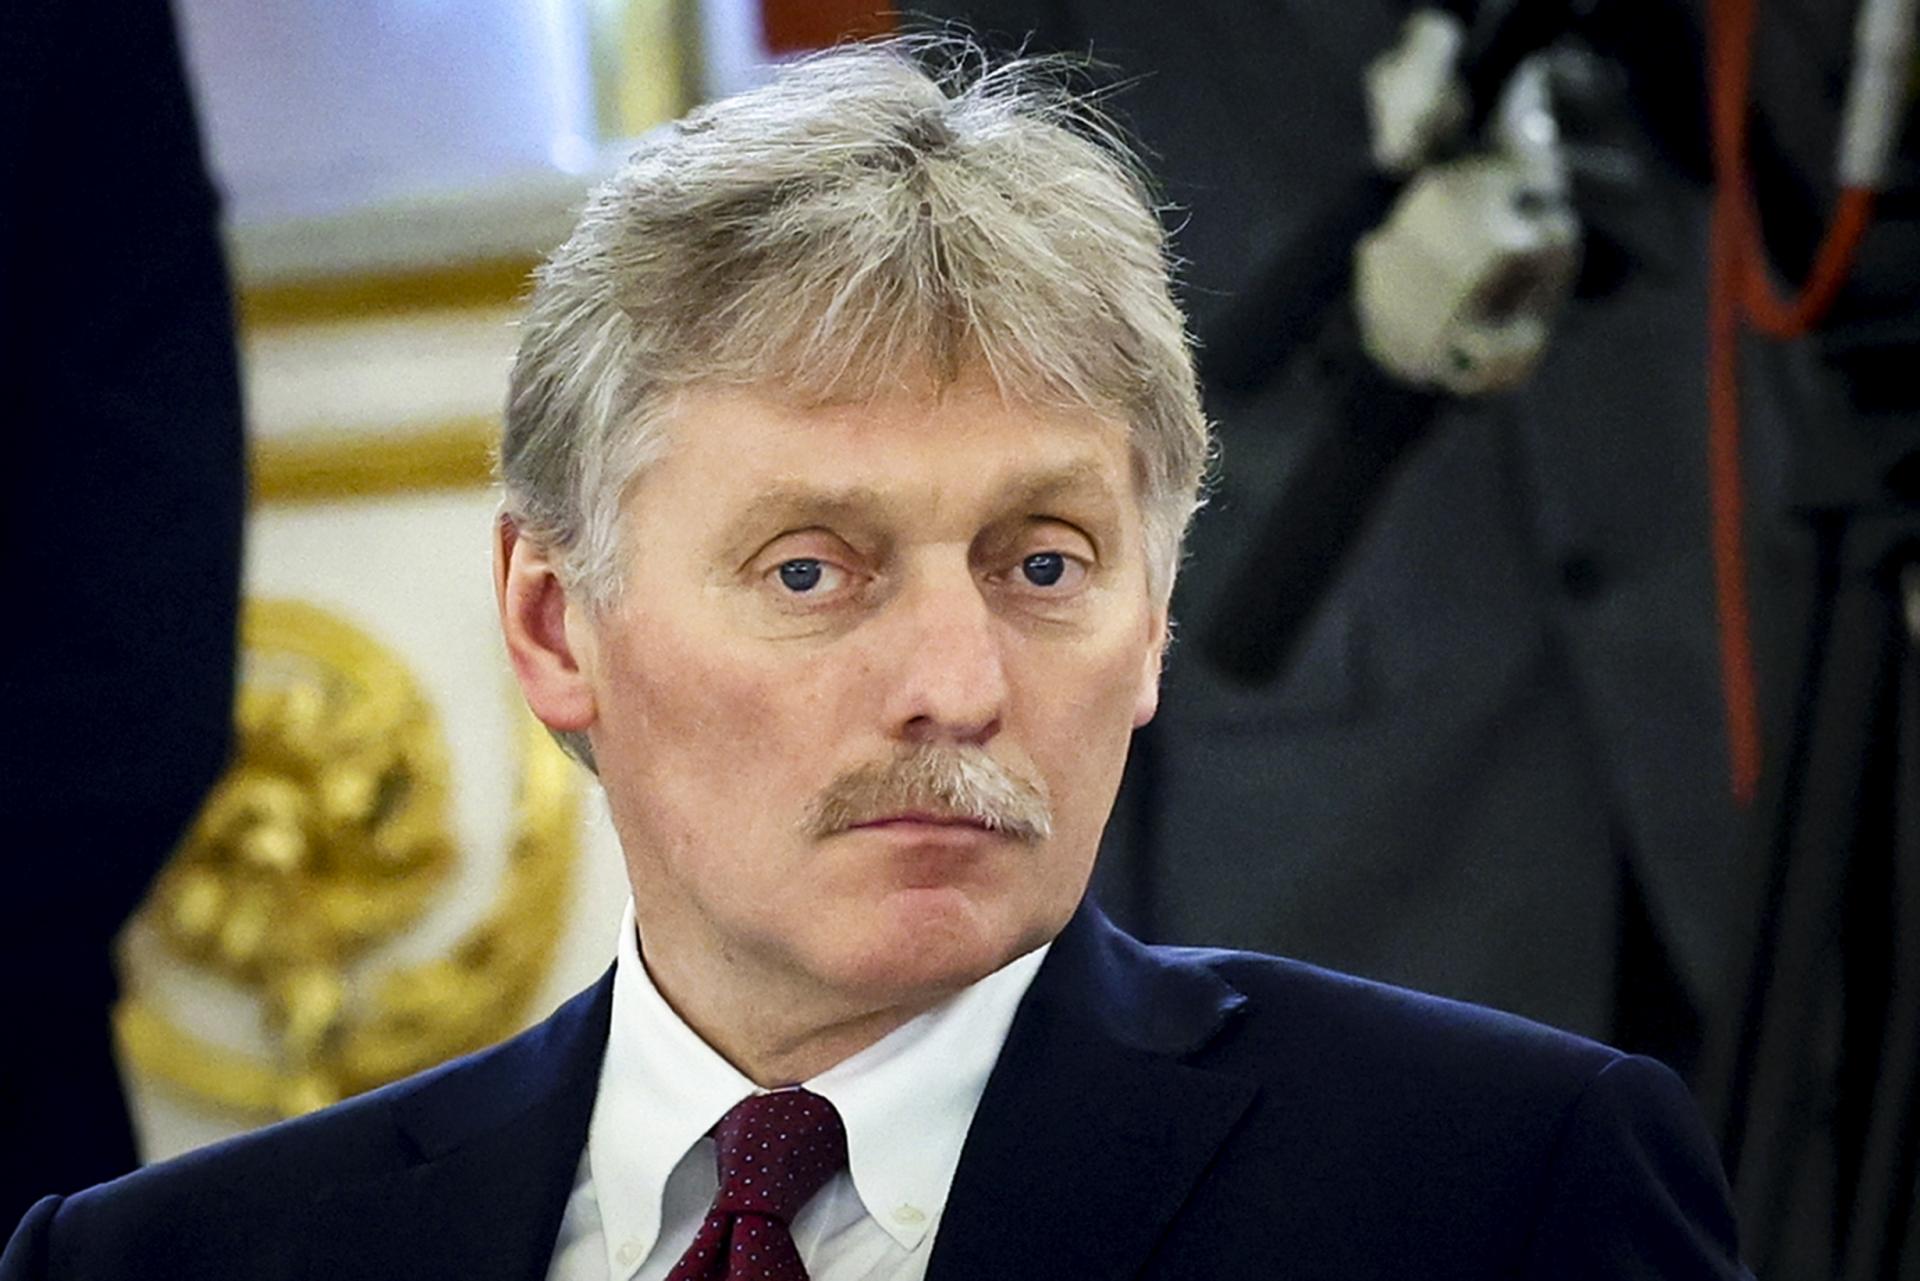 Kremeľ sleduje správy o nových možných sankciách, uviedol Peskov